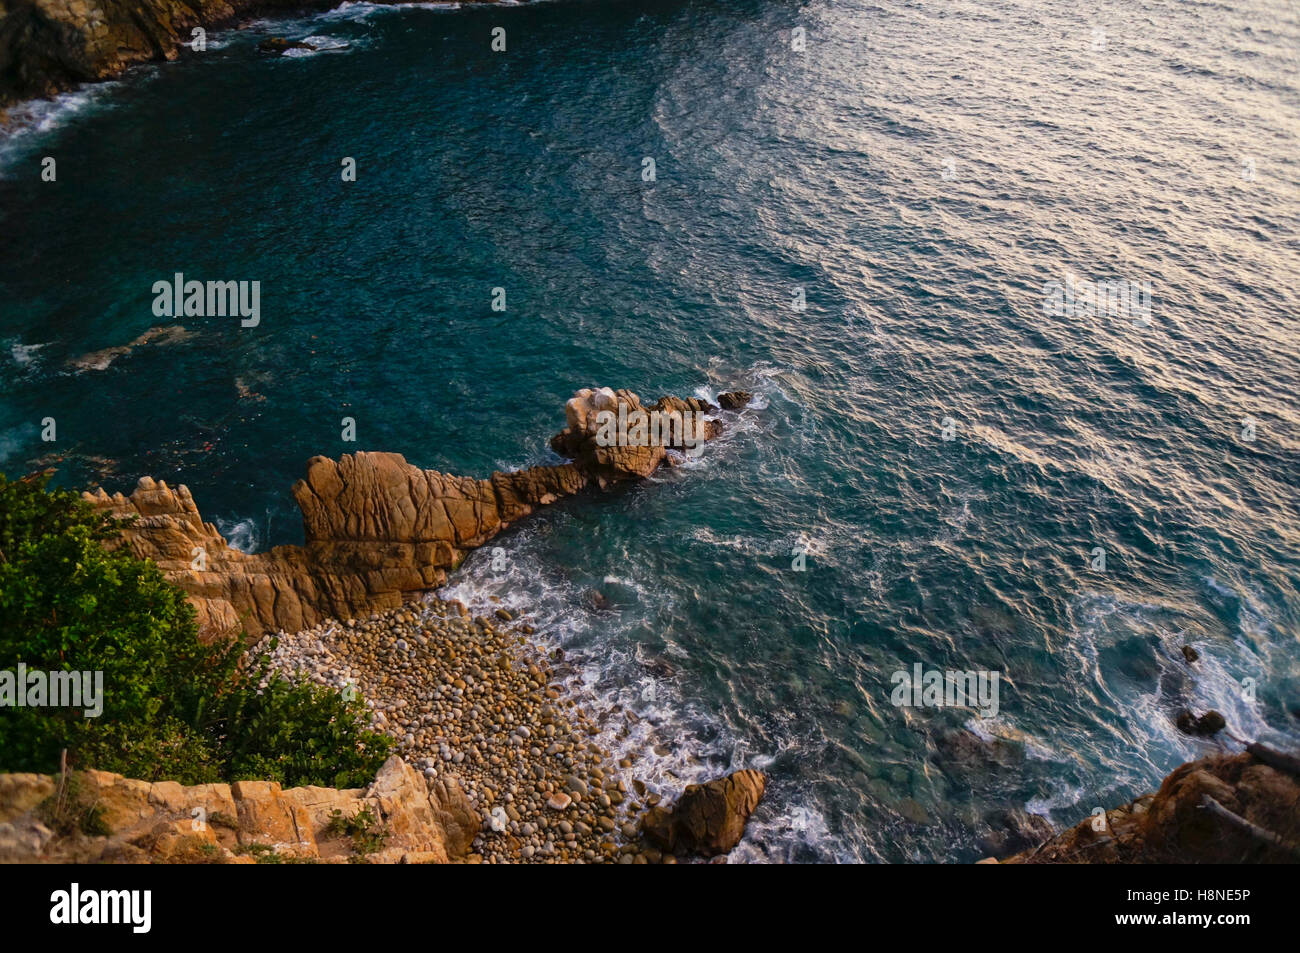 Formation de roche qui ressemble à un dragon dans l'océan Pacifique, Acapulco, Mexique Banque D'Images